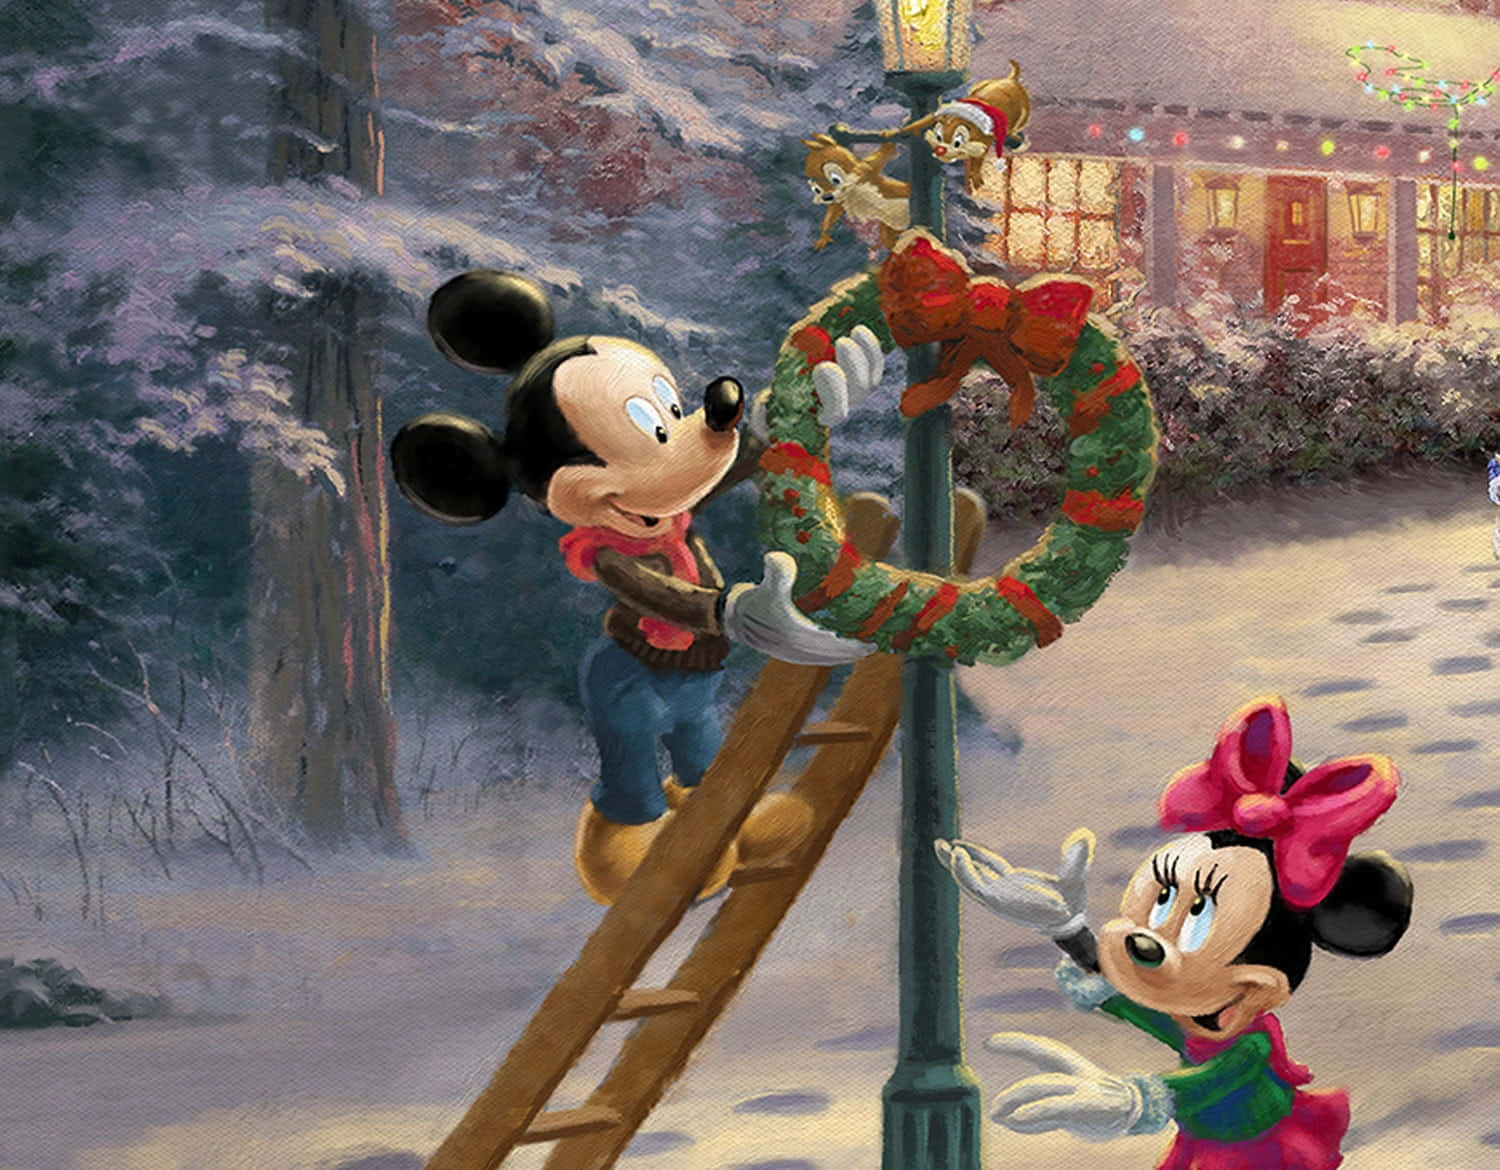 Mickeymouse Y Minnie Mouse Decorando Un Árbol De Navidad